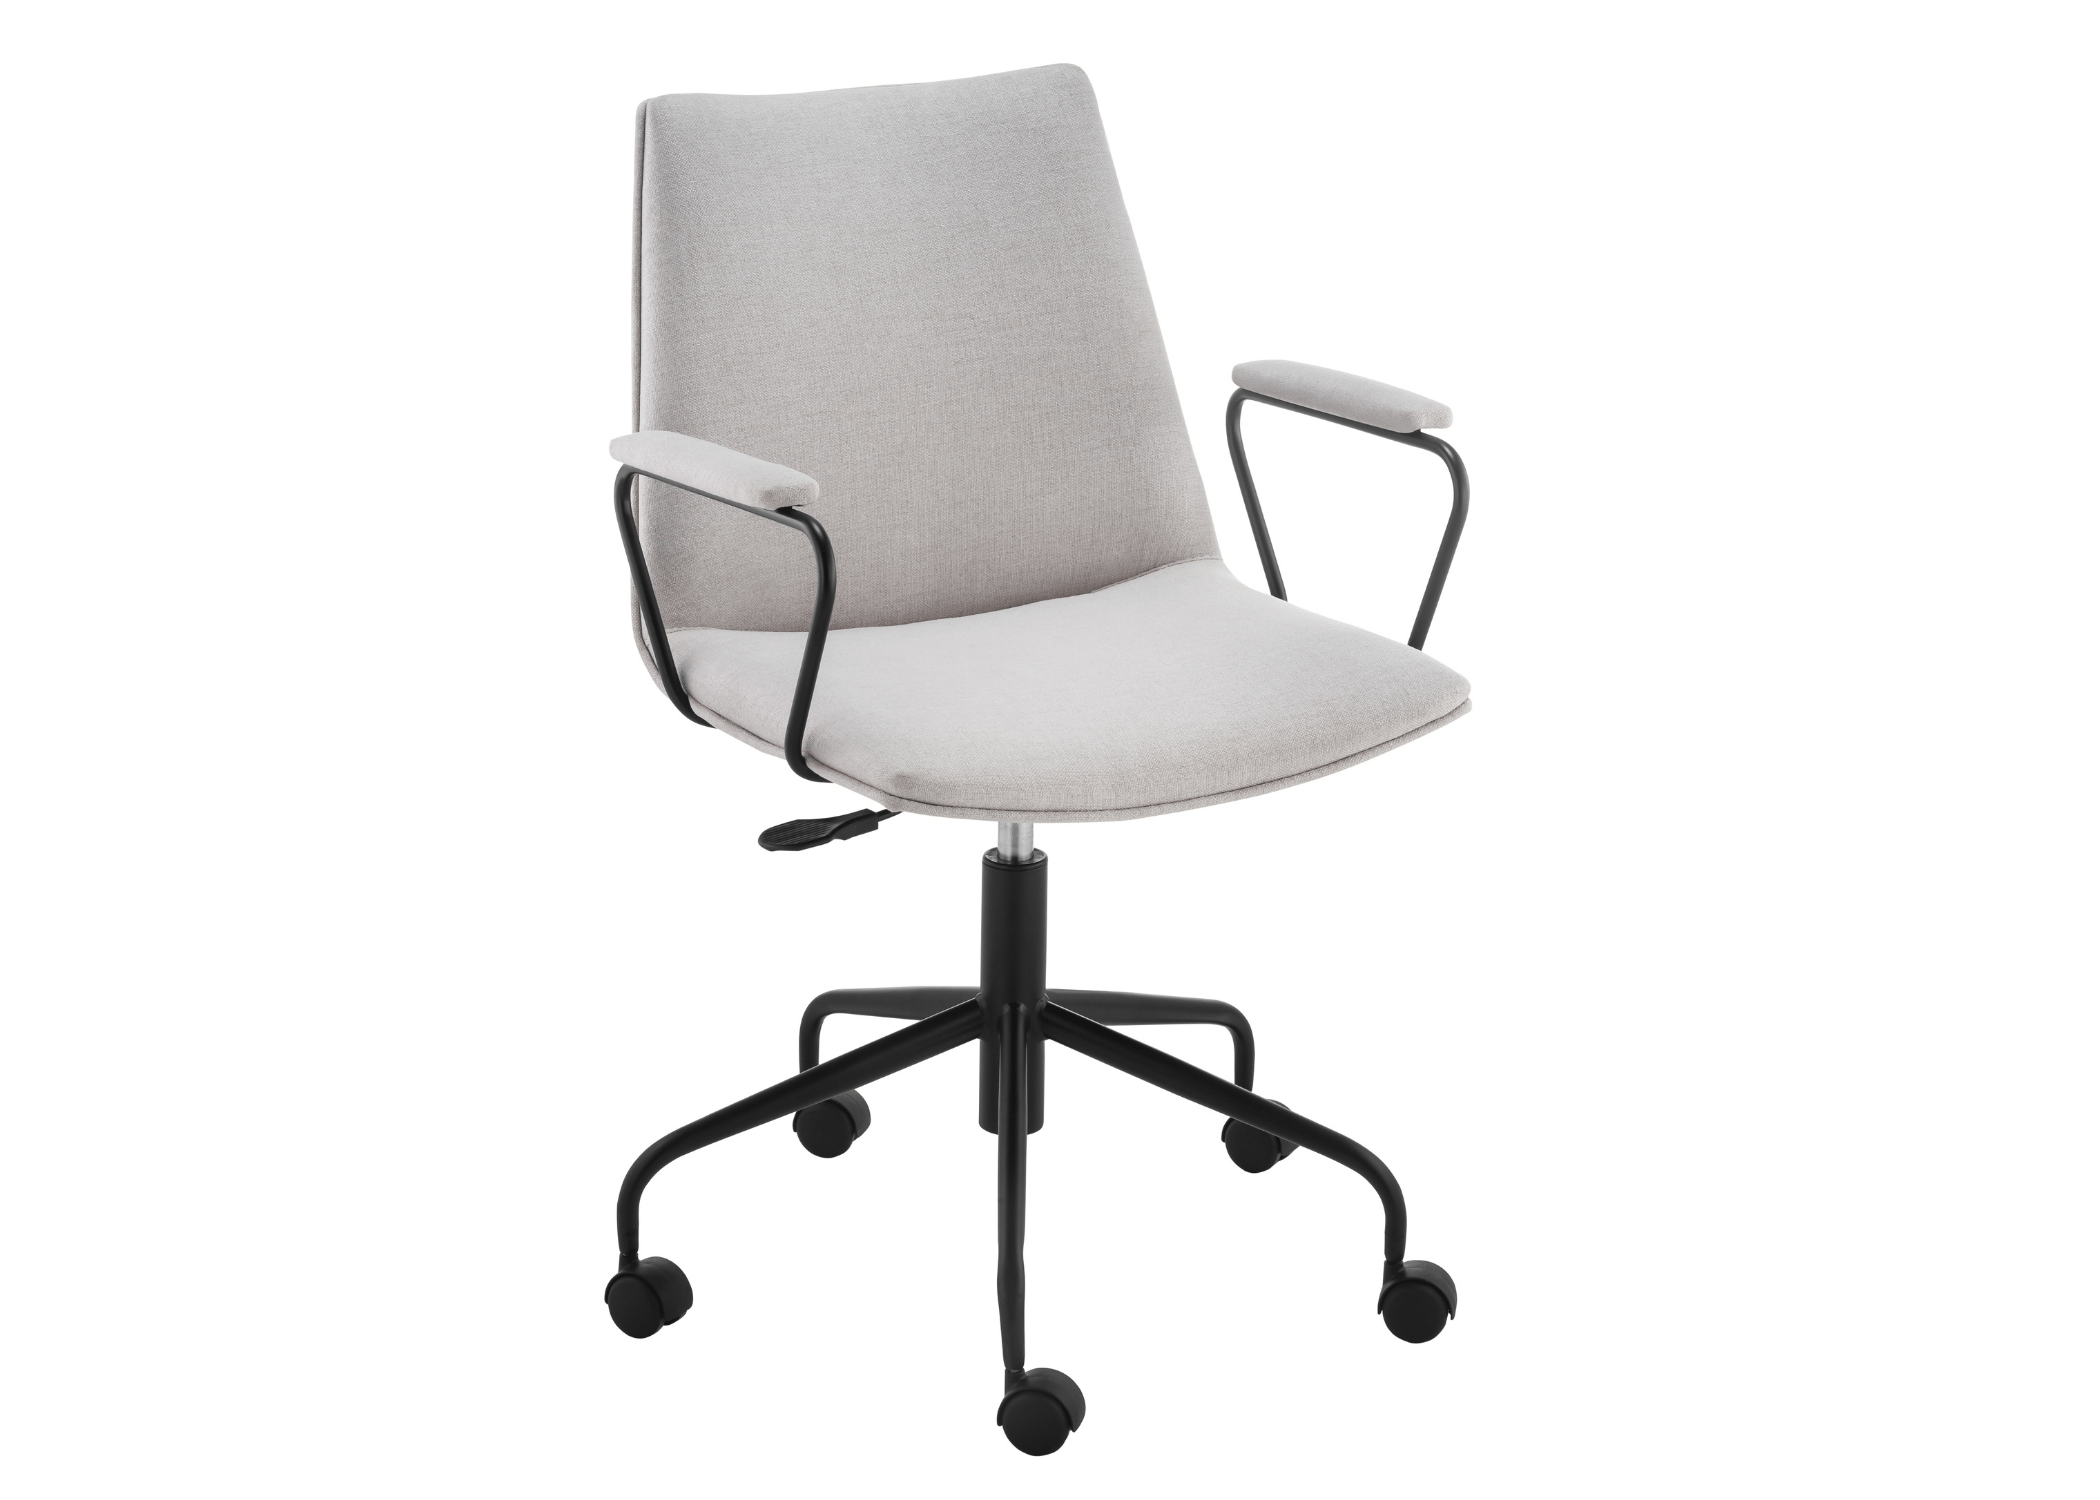 Cadeira de Escritório Wendy ideal para o seu escritório, esse modelo de cadeira também conta com base giratória